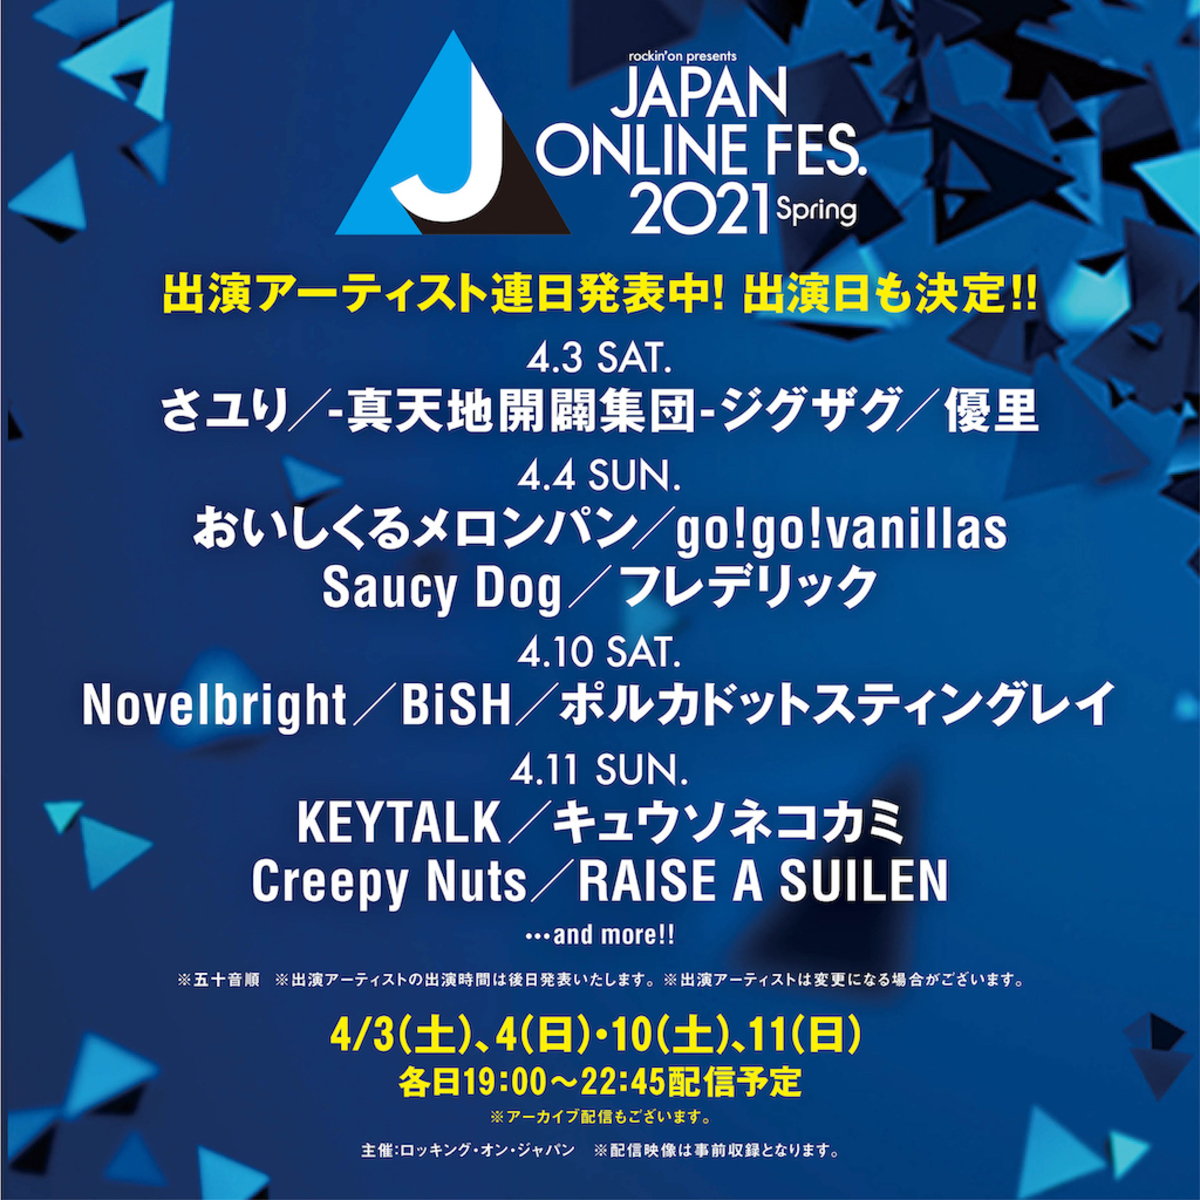 4月開催のオンライン フェス Japan Online Festival 21 Spring 全組の出演アーティストのうち14組の出演日が明らかに